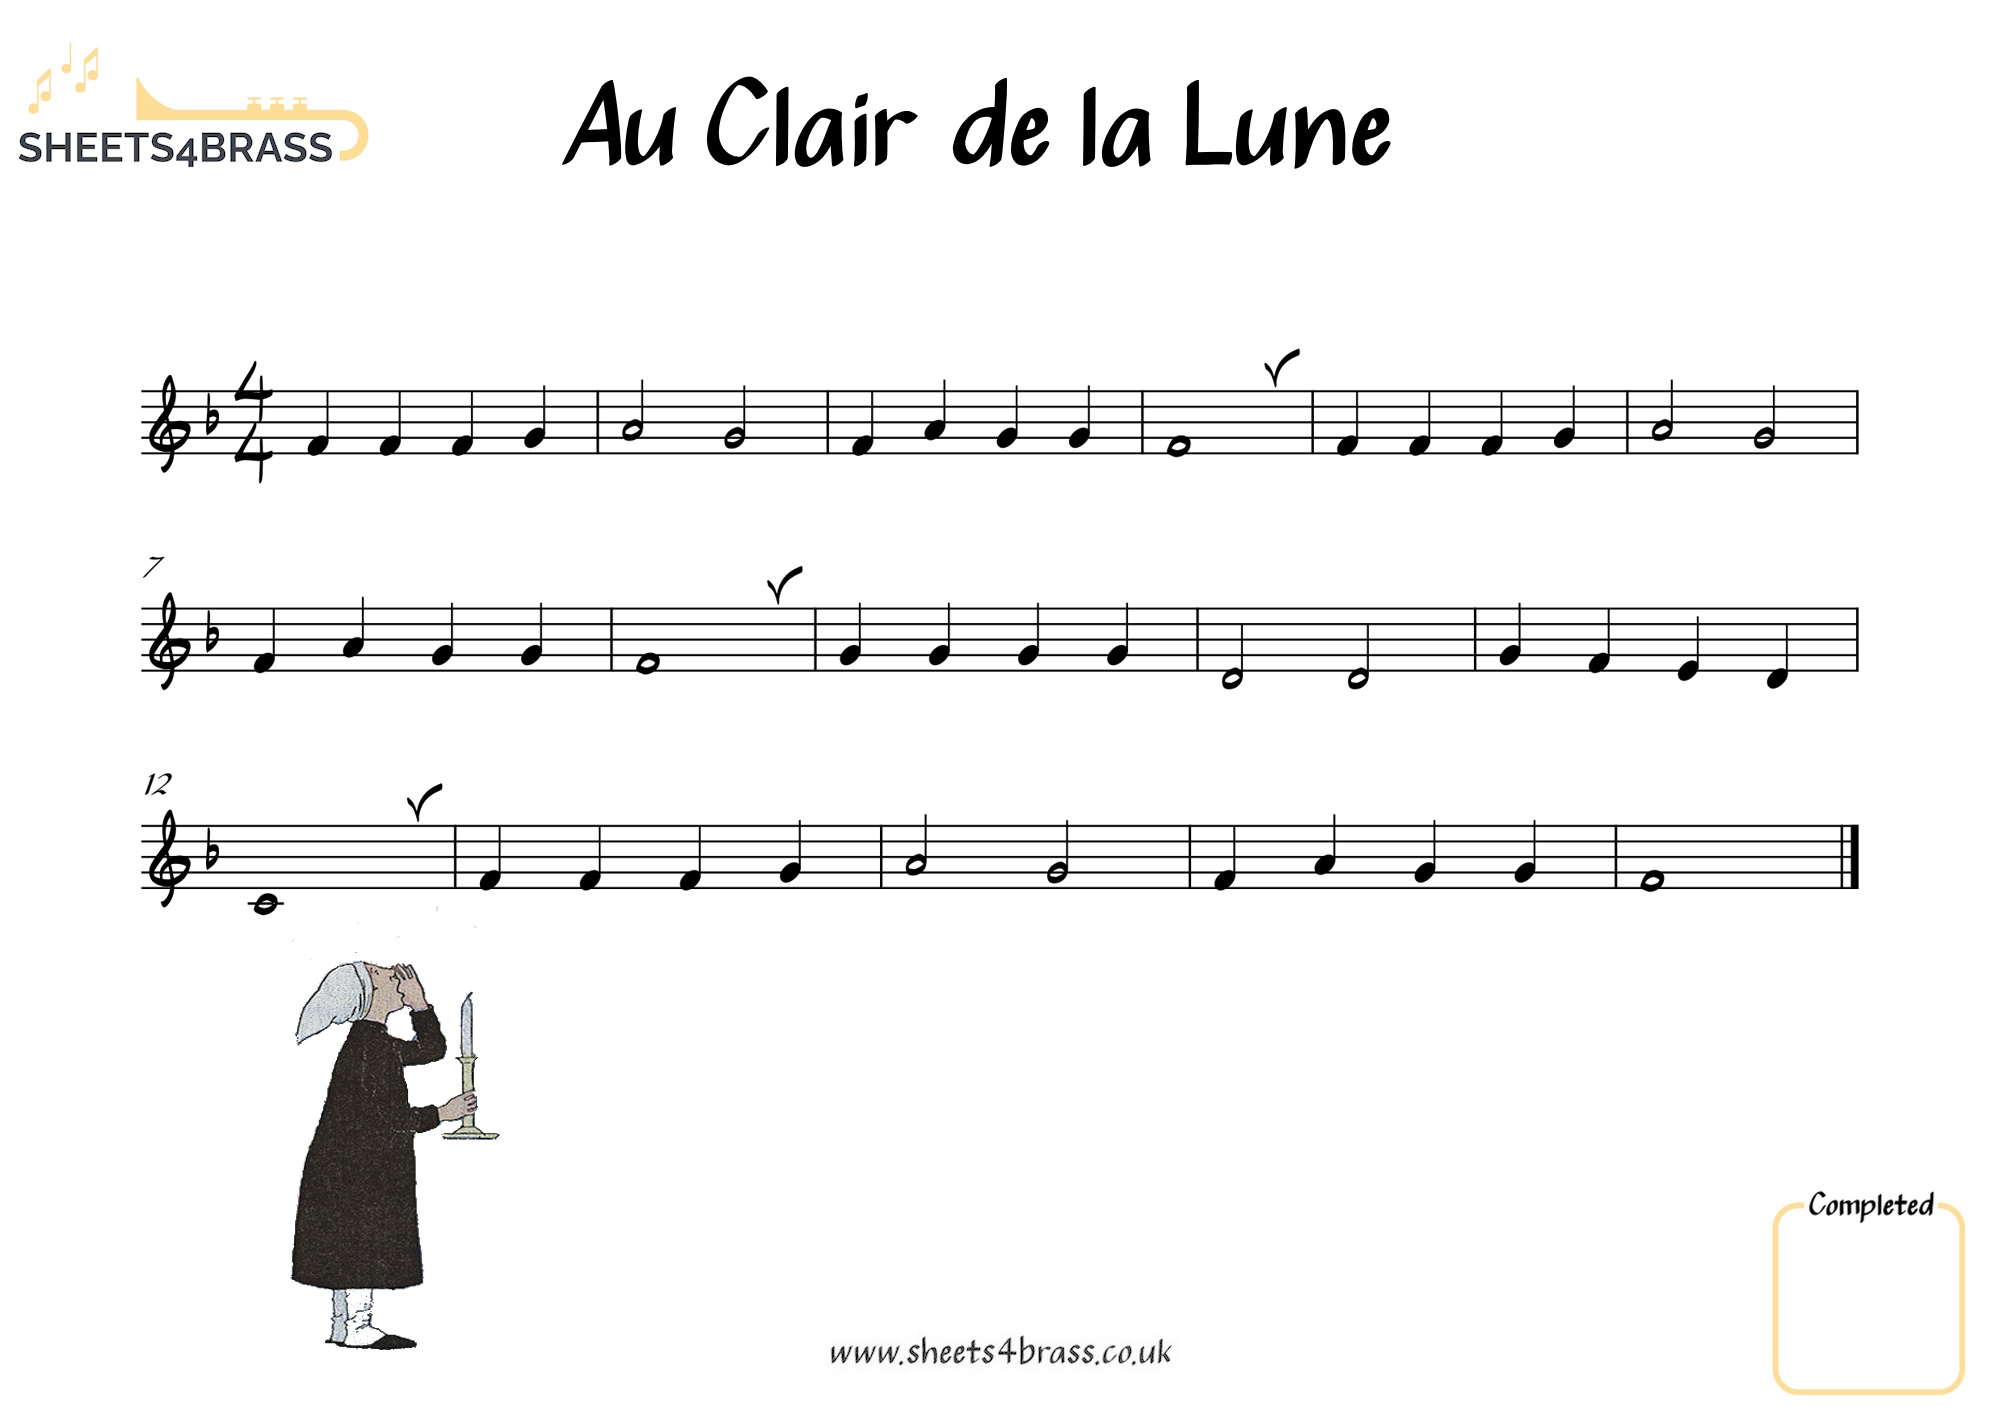 Au Clair de la Lune - Sheet Music for Brass sheets4brass